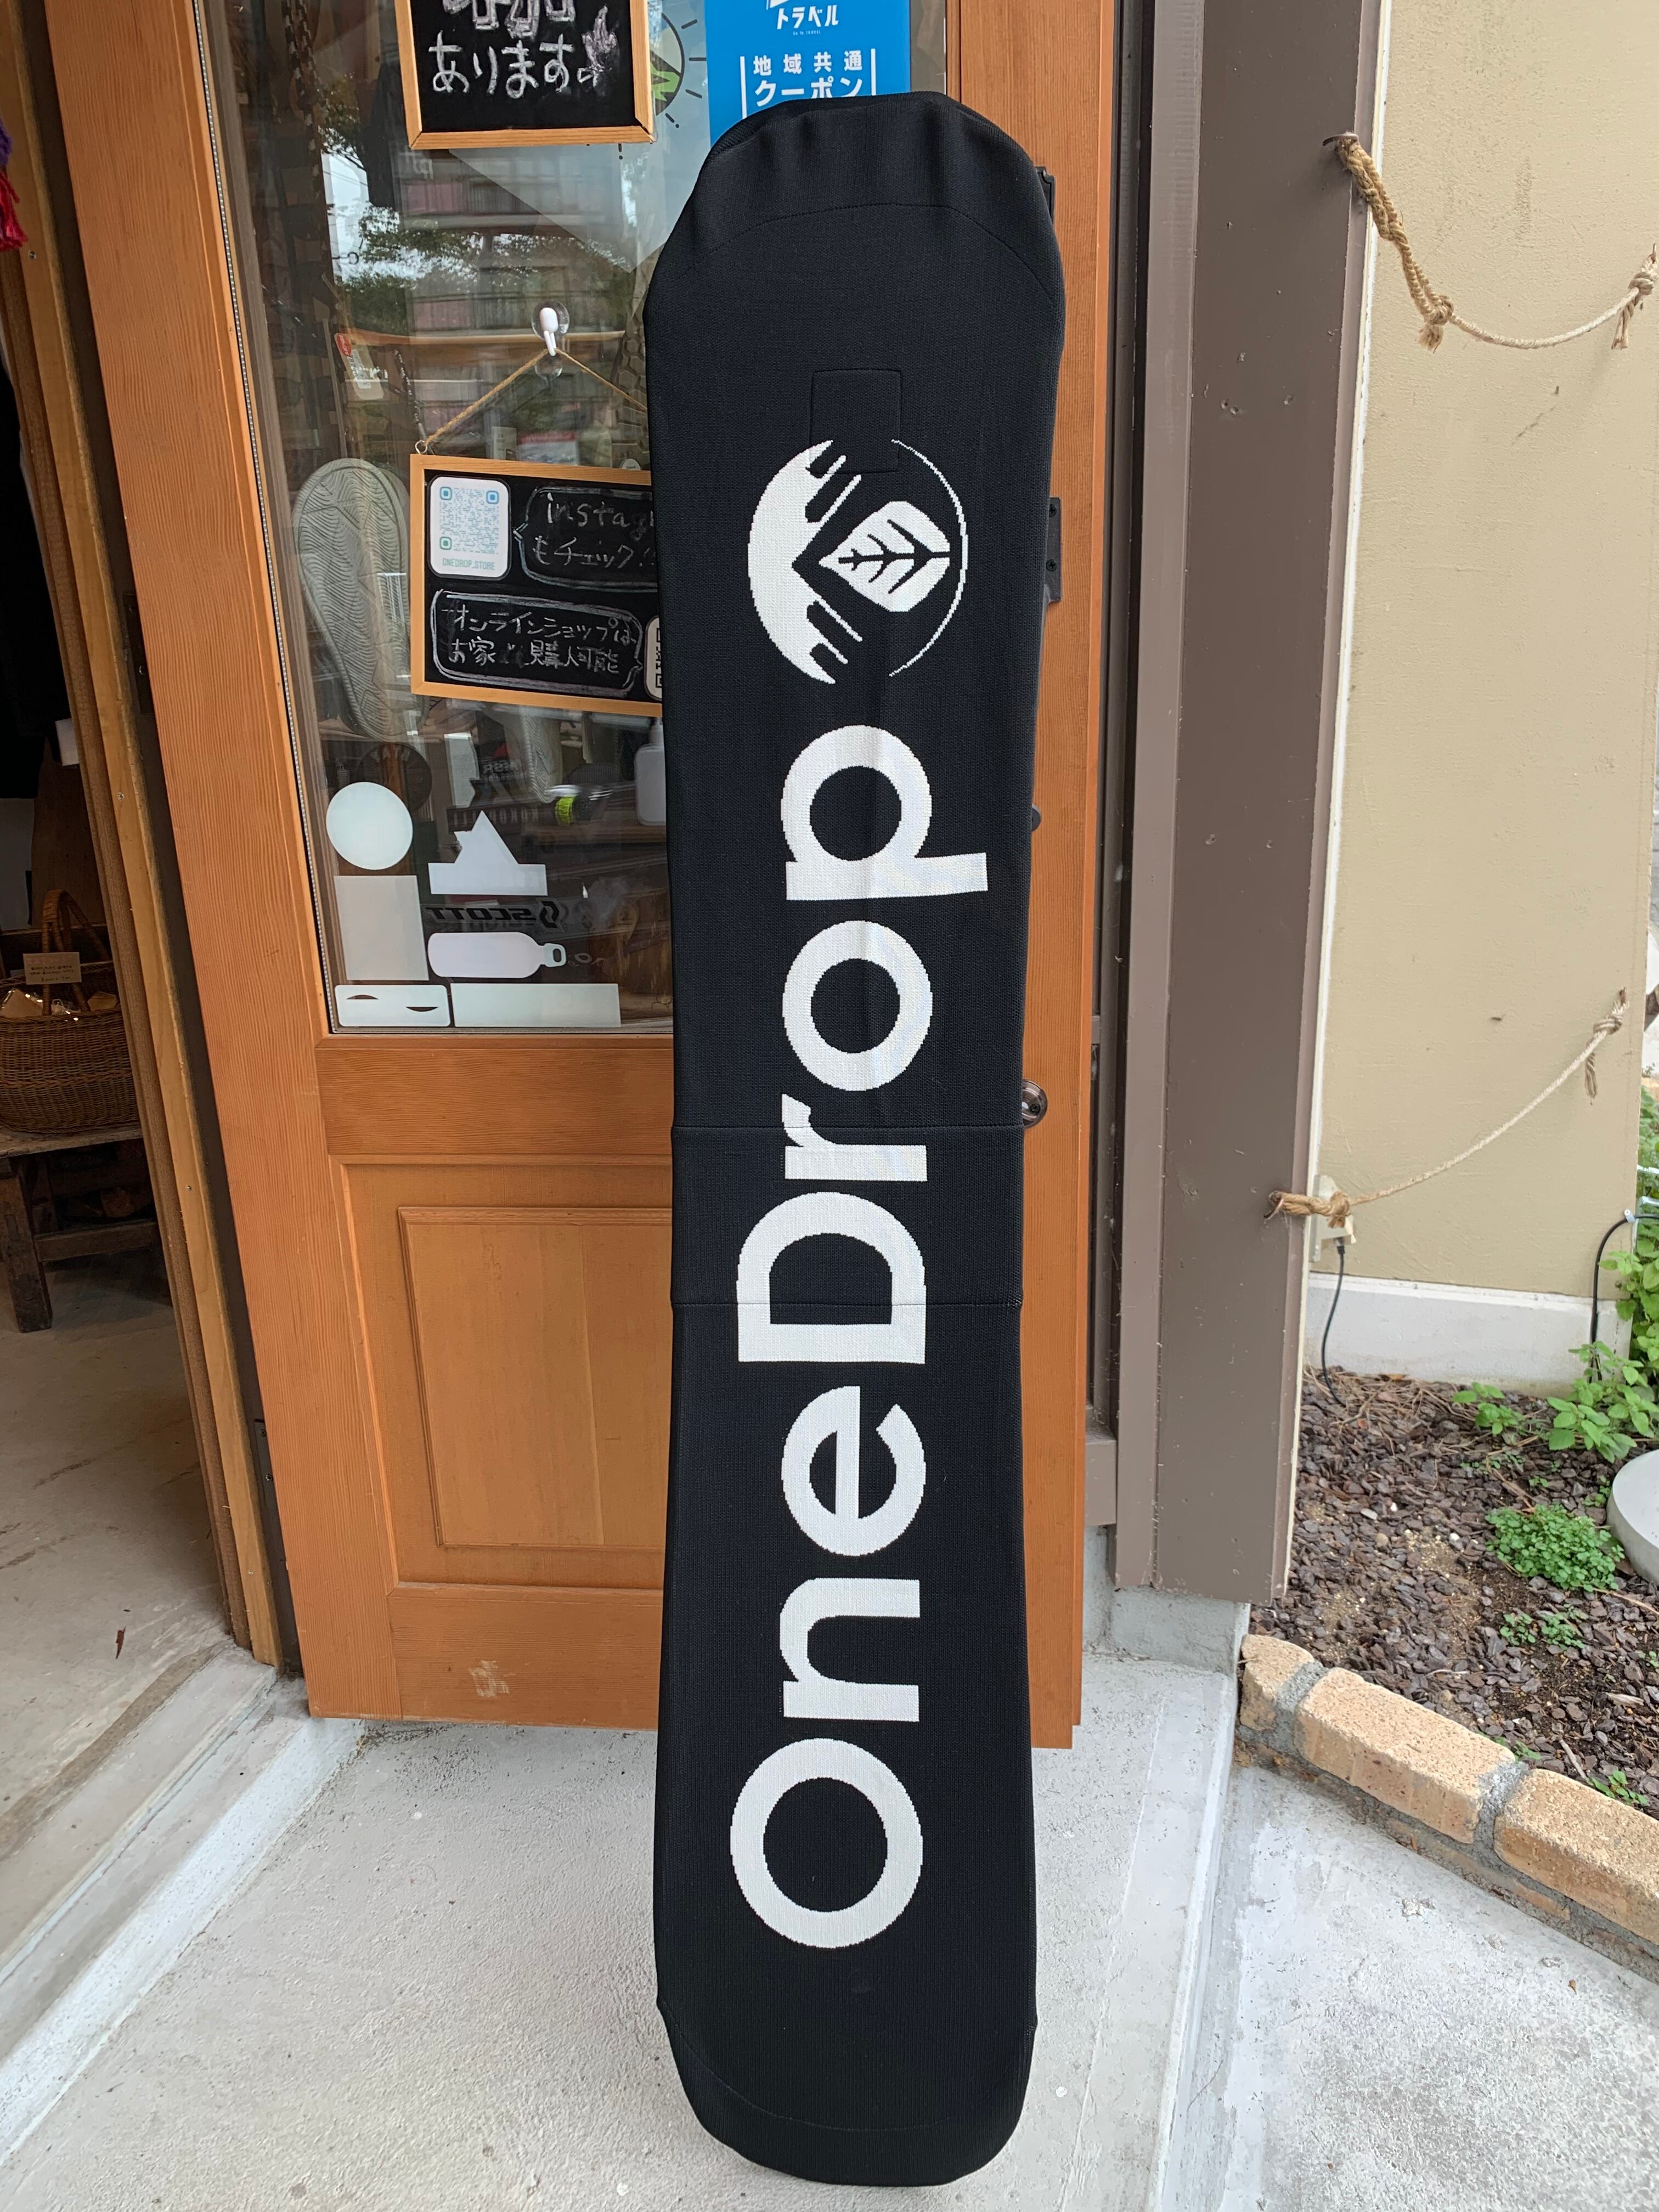 OneDropオリジナル スノーボードケース OneDrop⁺Store【アウトドア、キャンプ、登山用品のお店】